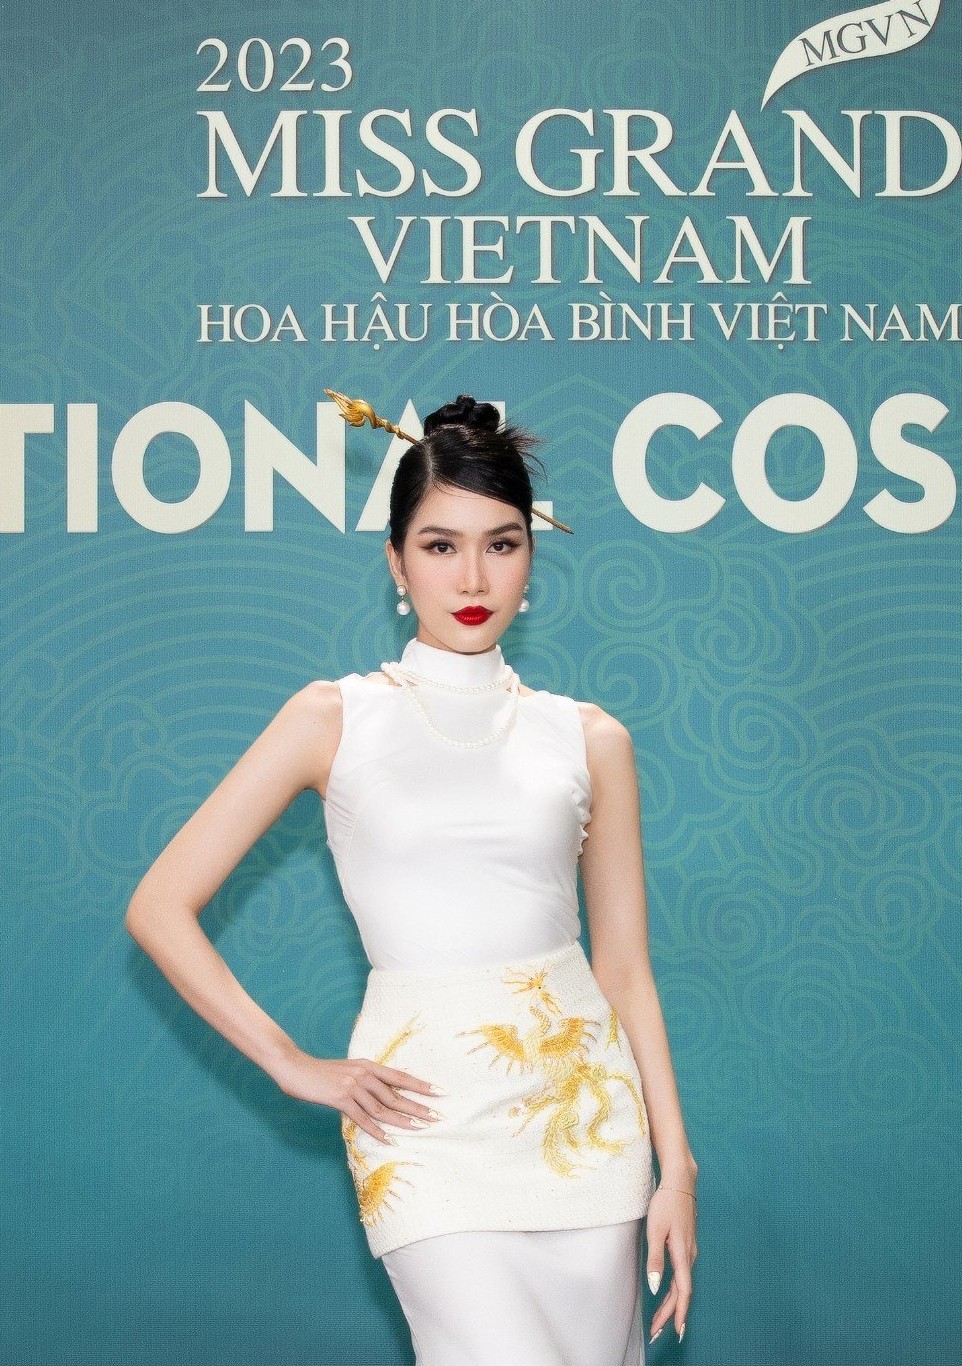 Hoa hậu Lương Thùy Linh khoe chân dài 1,22m tại sự kiện - Ảnh 10.